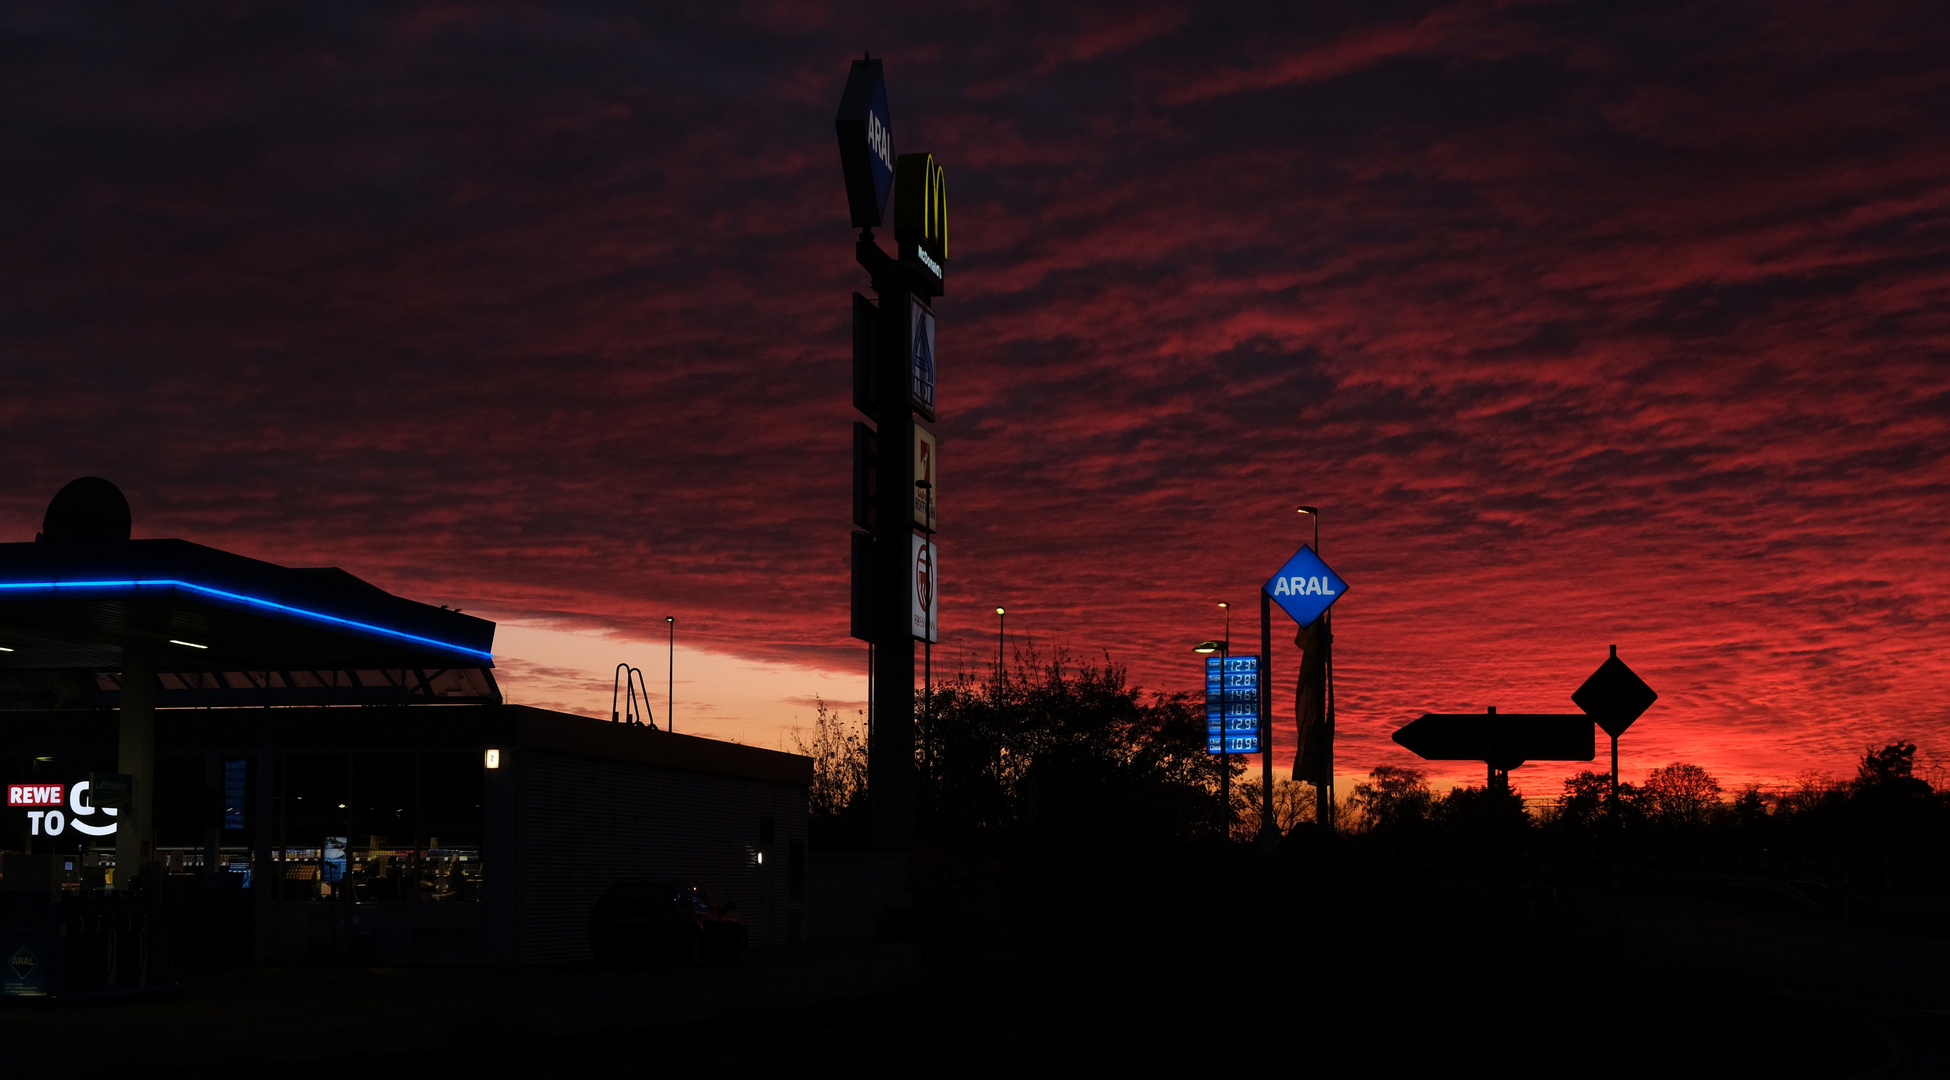 Tankstelle beim Sonnenuntergang